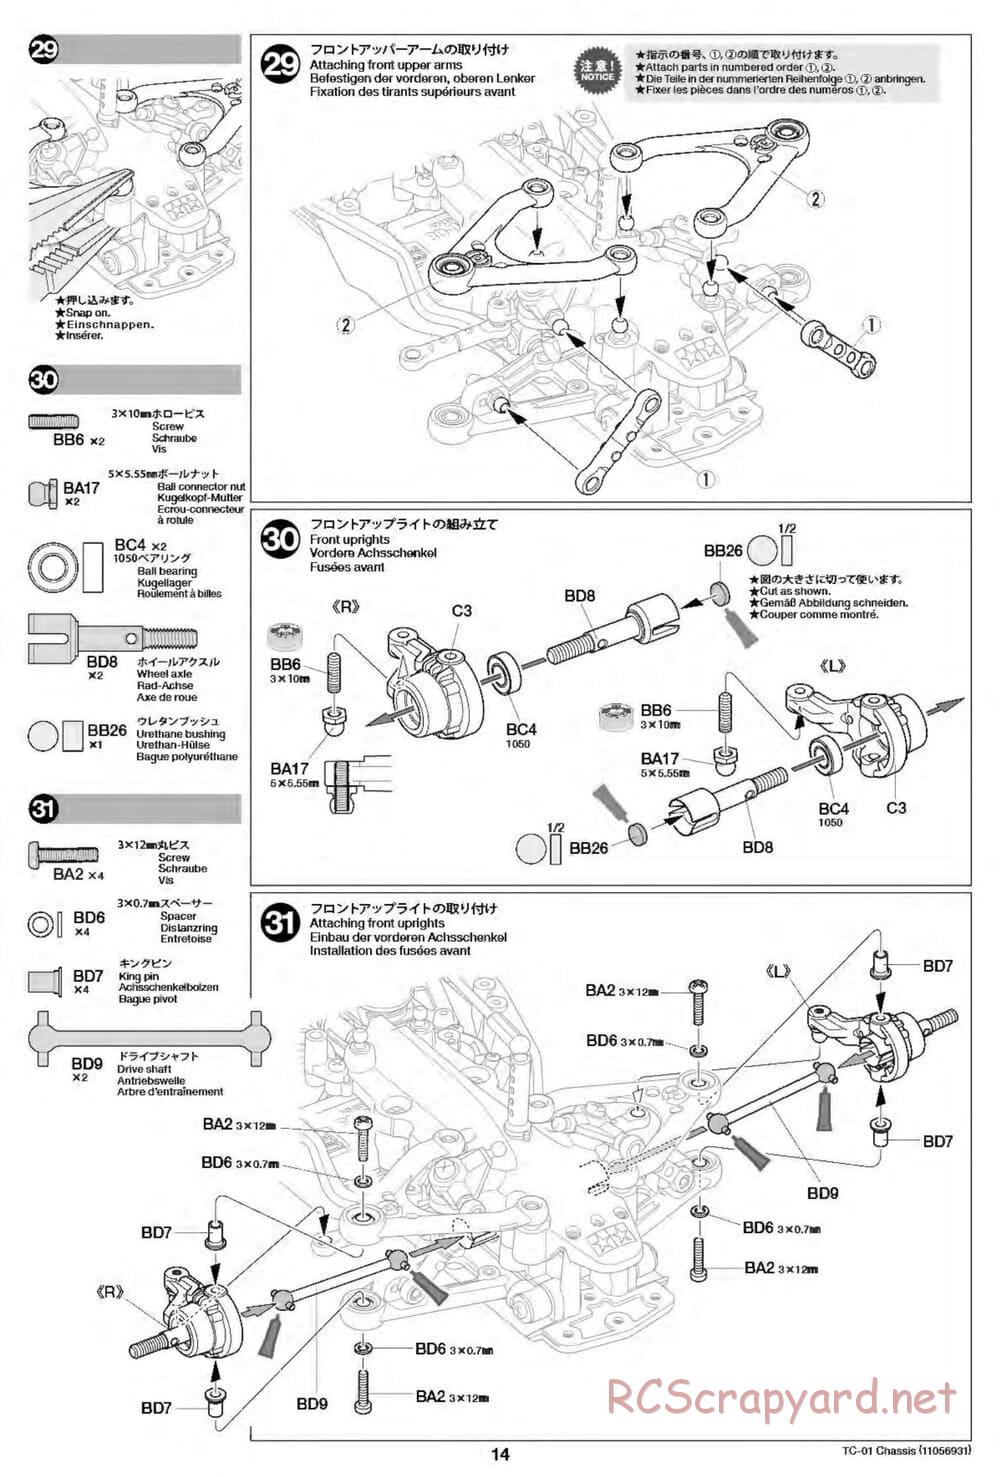 Tamiya - TC-01 Chassis - Manual - Page 14